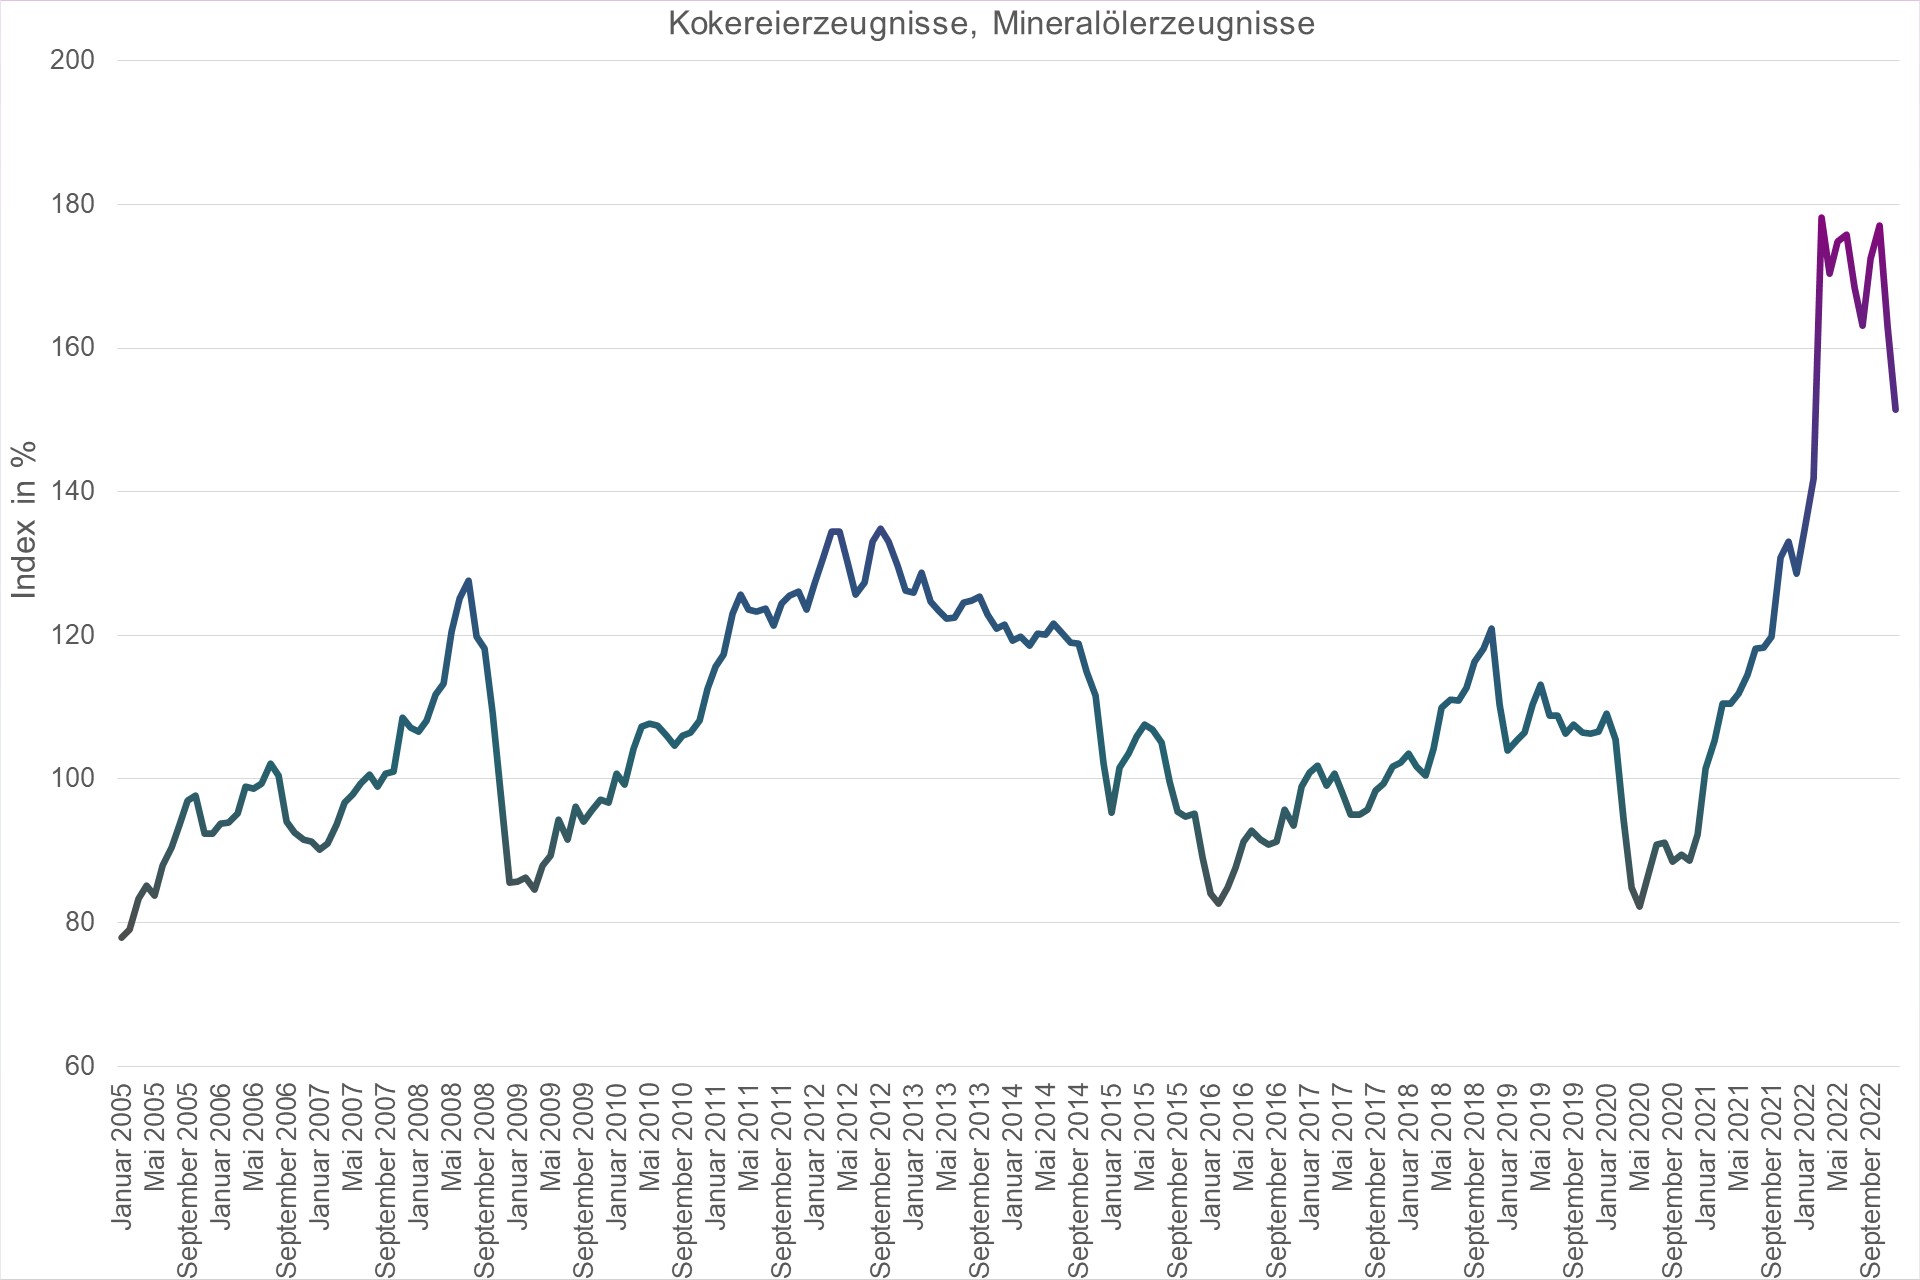 Grafik Preisindex Kokereierzeugnisse, Mineralölerzeugnisse